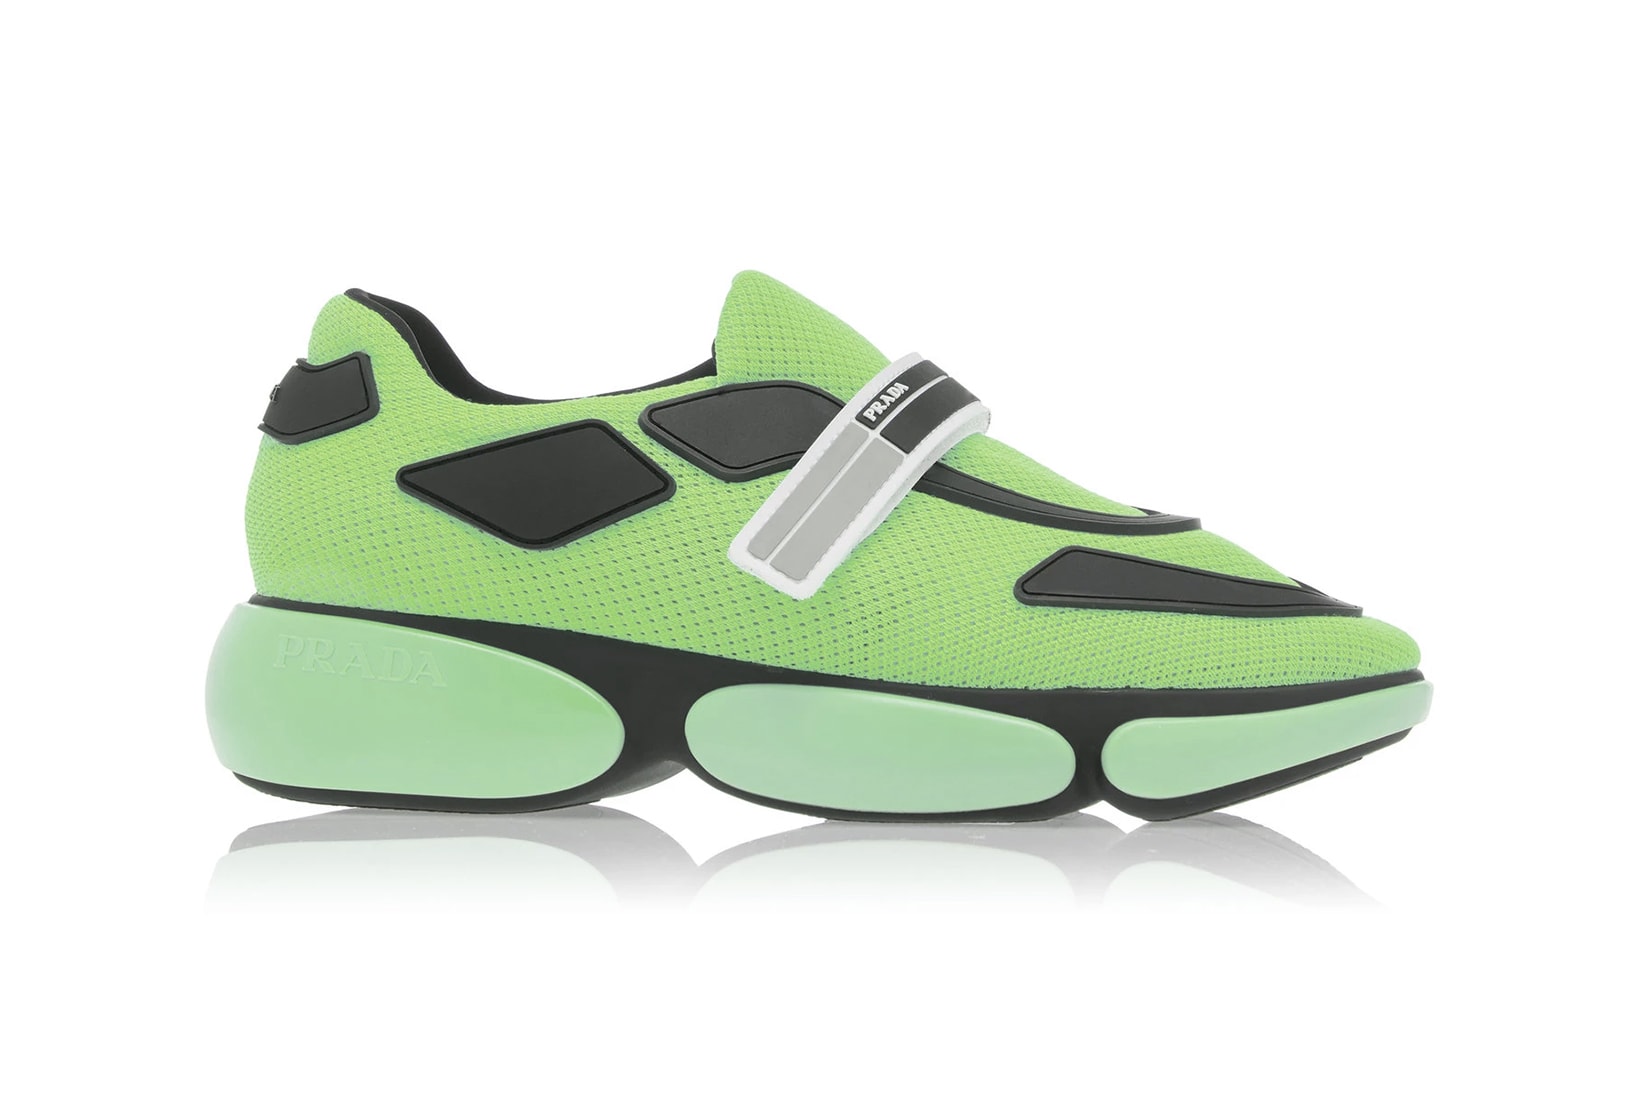 Prada Allacciate Tronchetti Sneakers Trainers Boots Neon Pink Green Orange Black White Sneakerboot Futuristic Fall/Winter 2018 Pre Order Where to Buy Moda Operandi